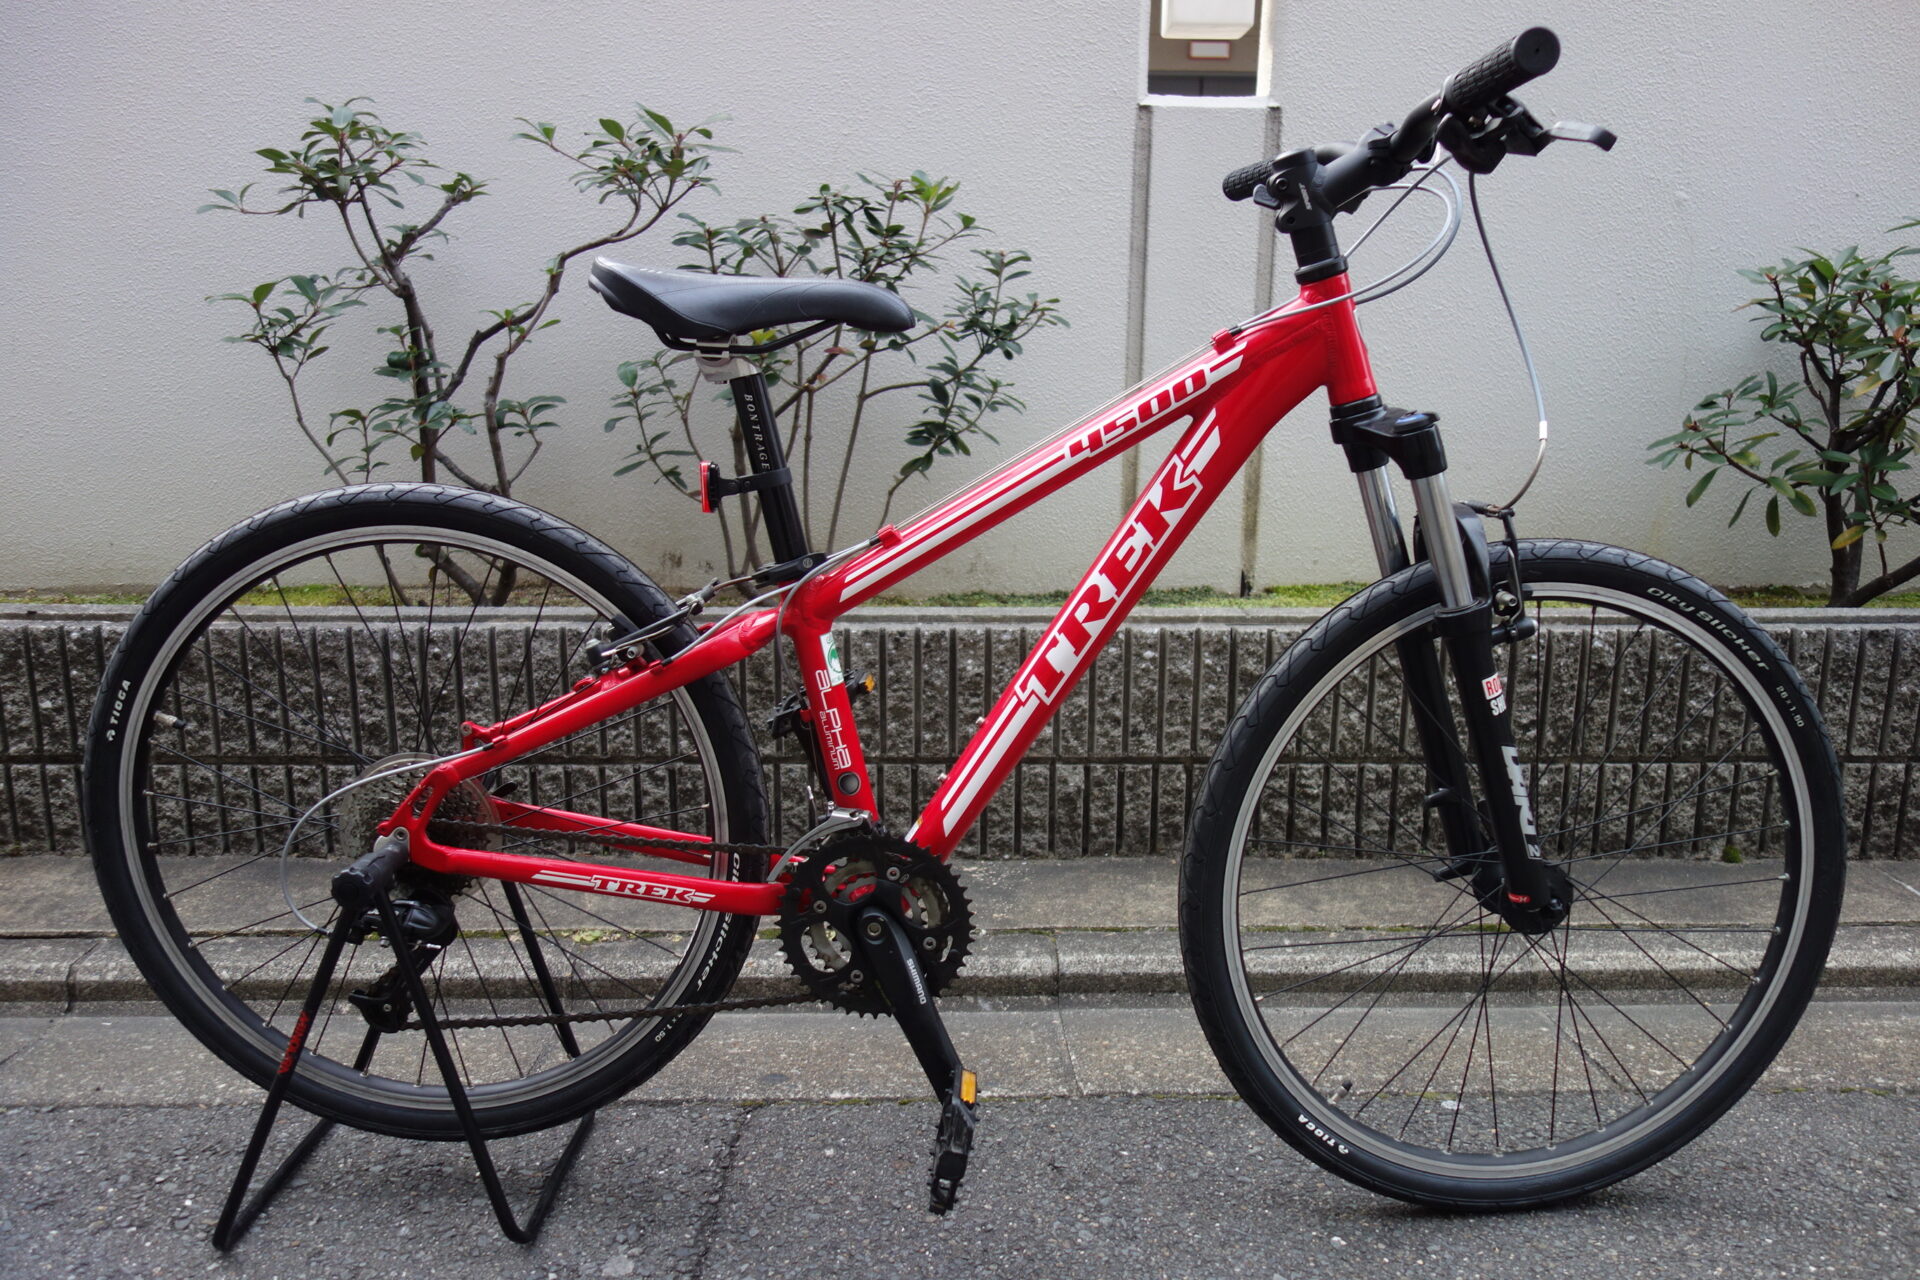 中古ワケありMTBが入荷しましたよ!!～TREK 4500～ | 京都の中古自転車